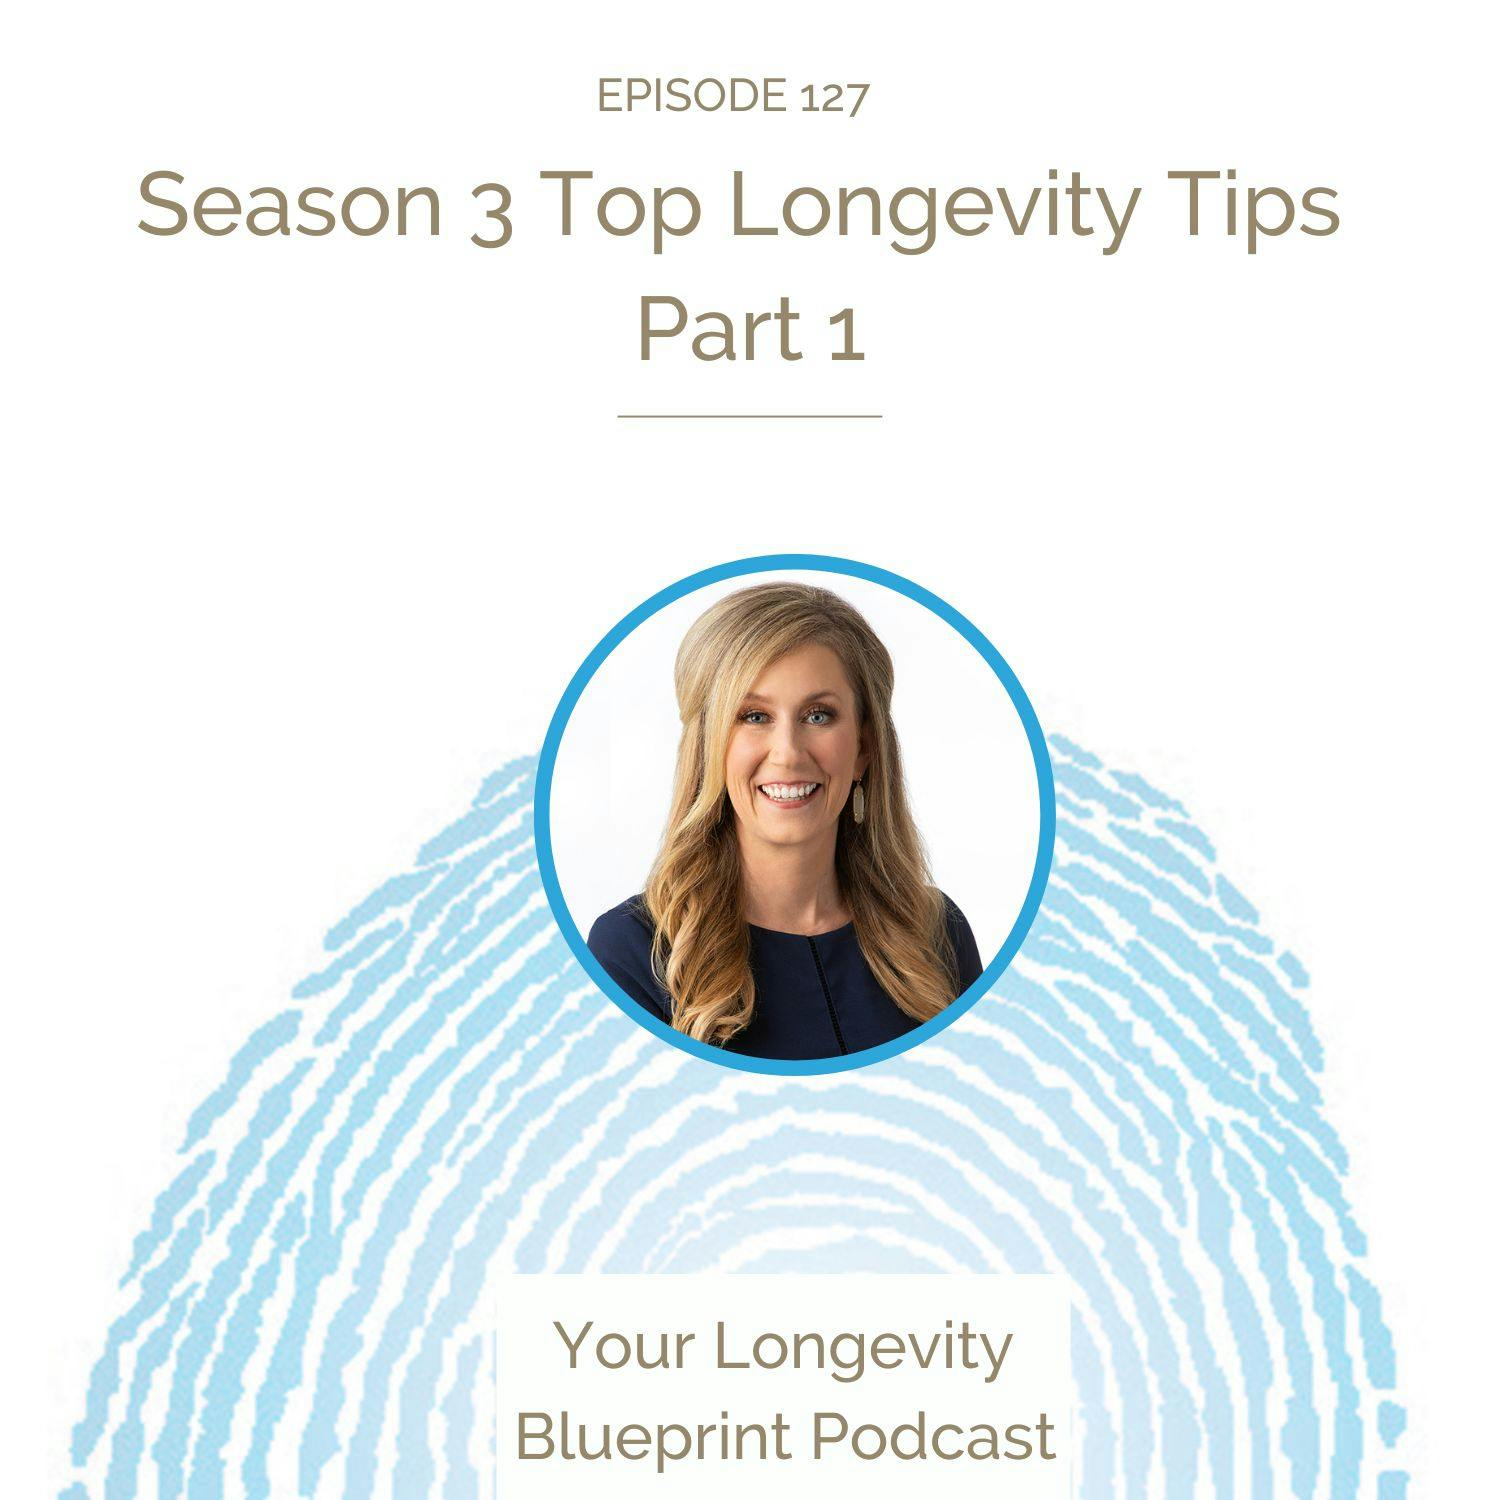 Season 3 Top Longevity Tips Part 1